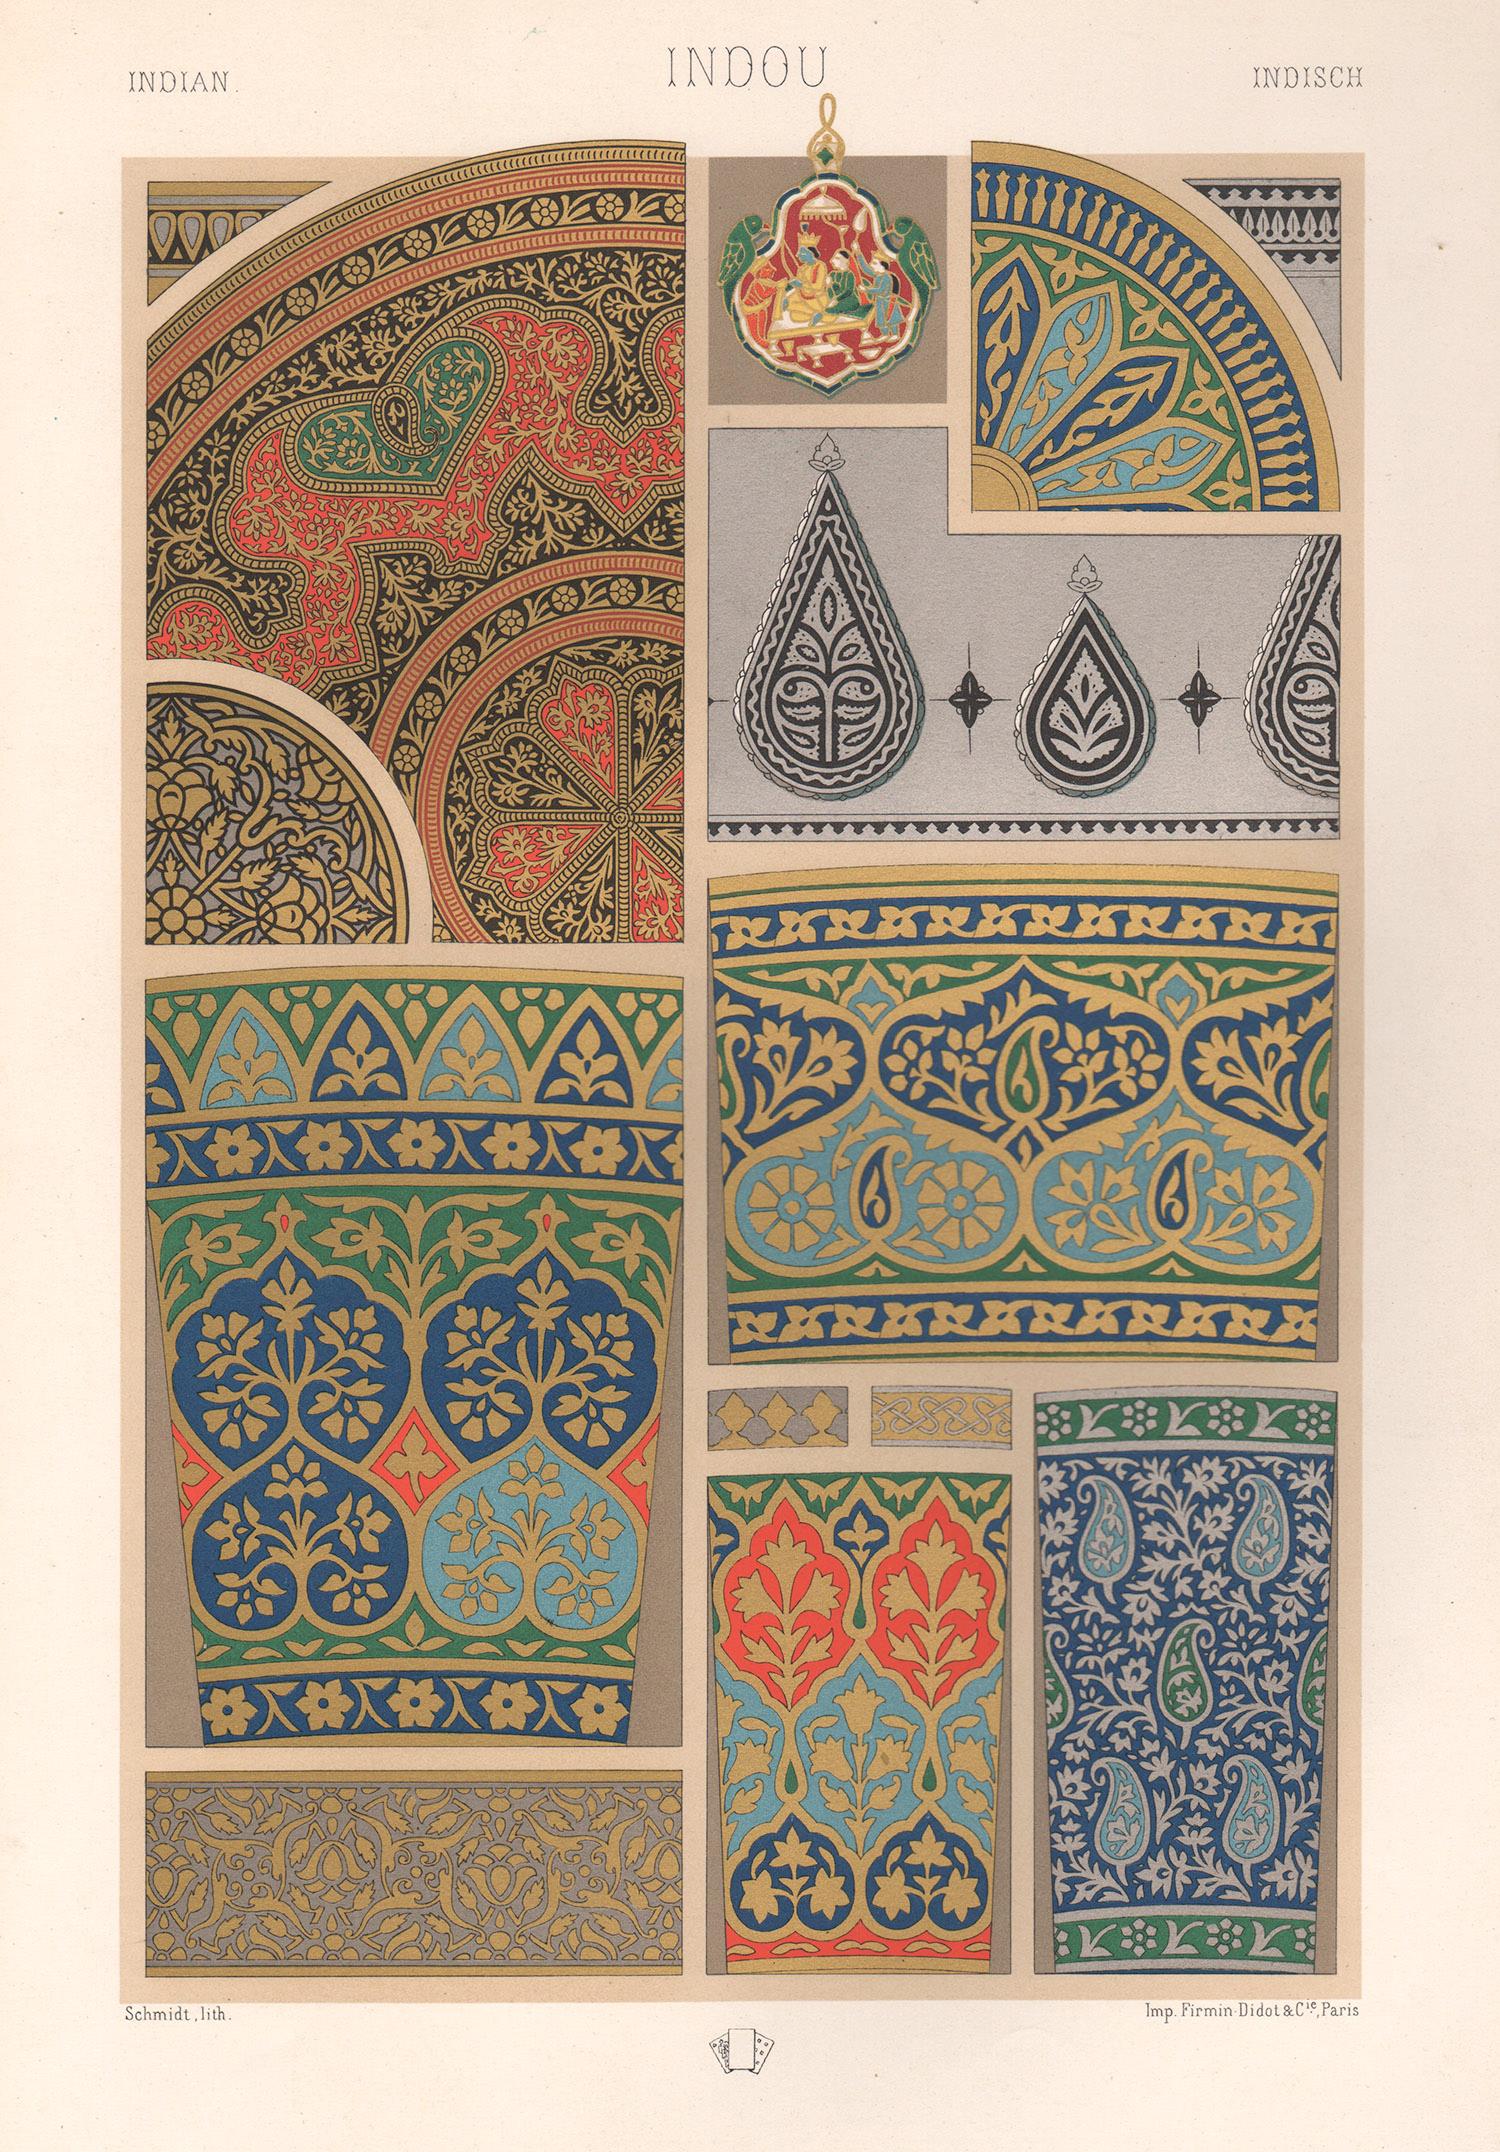 Albert-Charles-Auguste Racinet Interior Print – Indische, französische antike Racinet-Kunstdesign-Lithographie aus dem 19. Jahrhundert